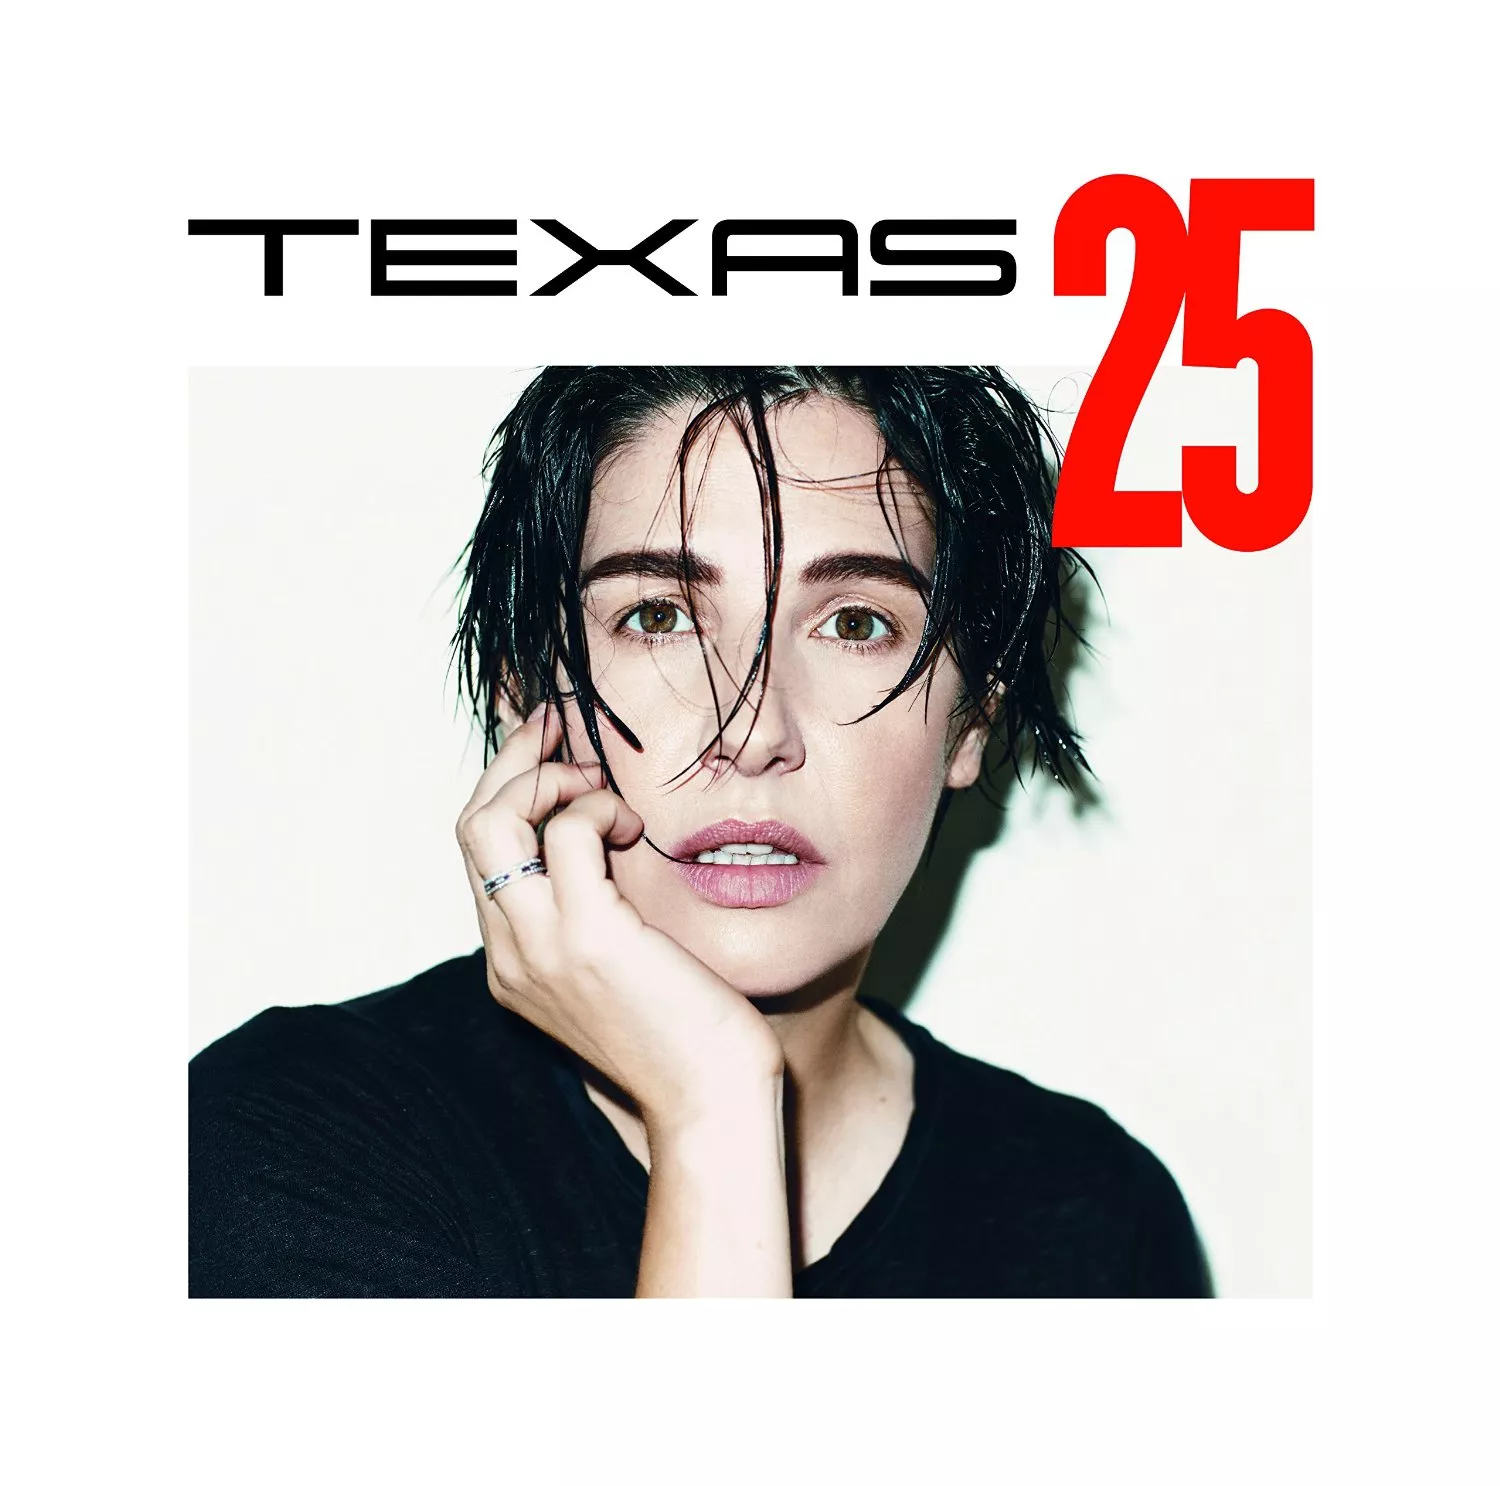 Texas 25 - Texas